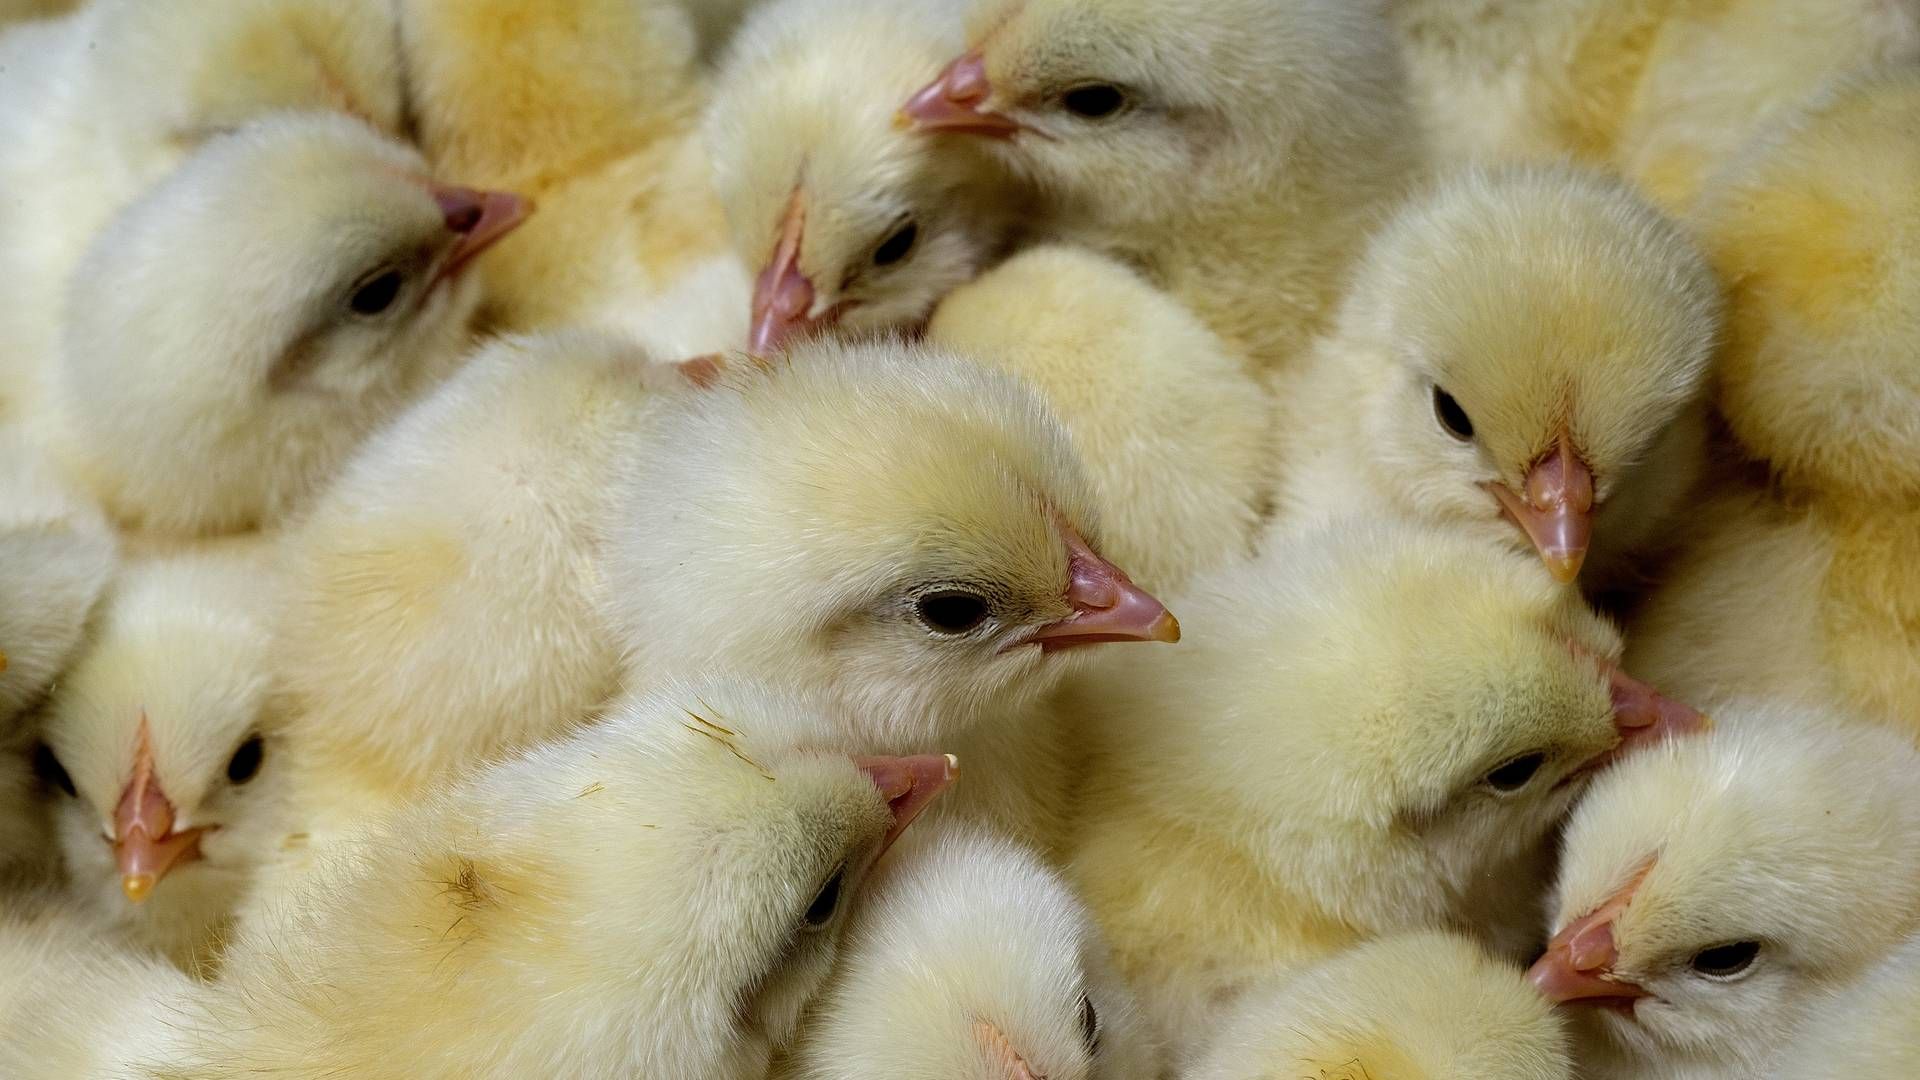 I samarbejde med Danhatch skal nordjyde fremover sælge millioner af æg. | Foto: Carsten Andreasen